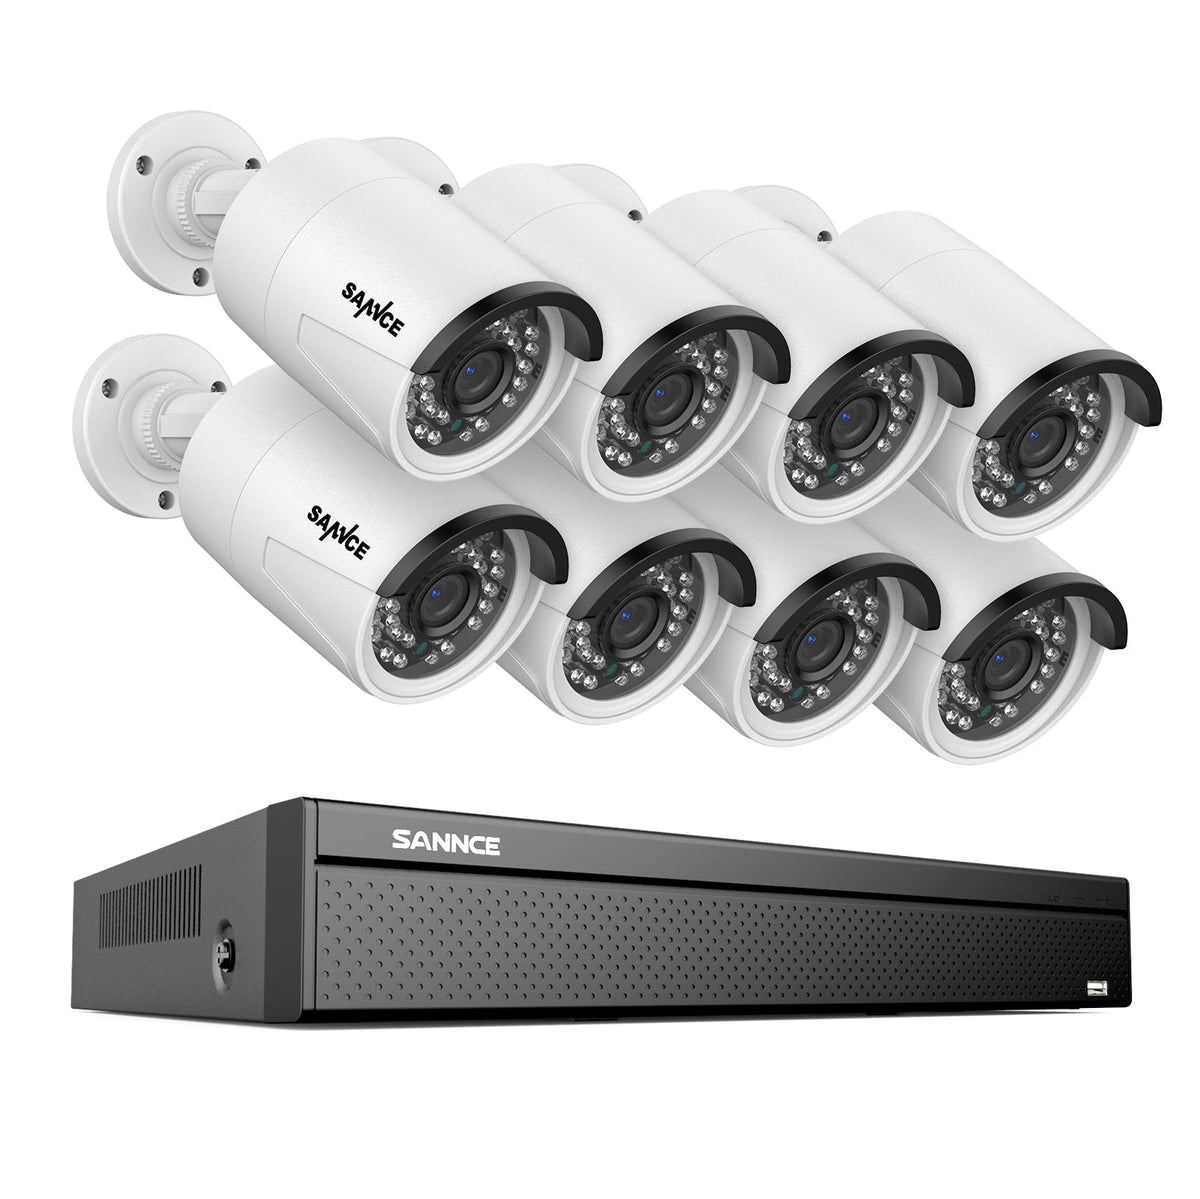 16 canaux 4K PoE Système de caméras de sécurité, 8MP caméras IP PoE extérieures, NVR compatible ONVIF, audio bidirectionnel, détection intelligente humaine/vehicule